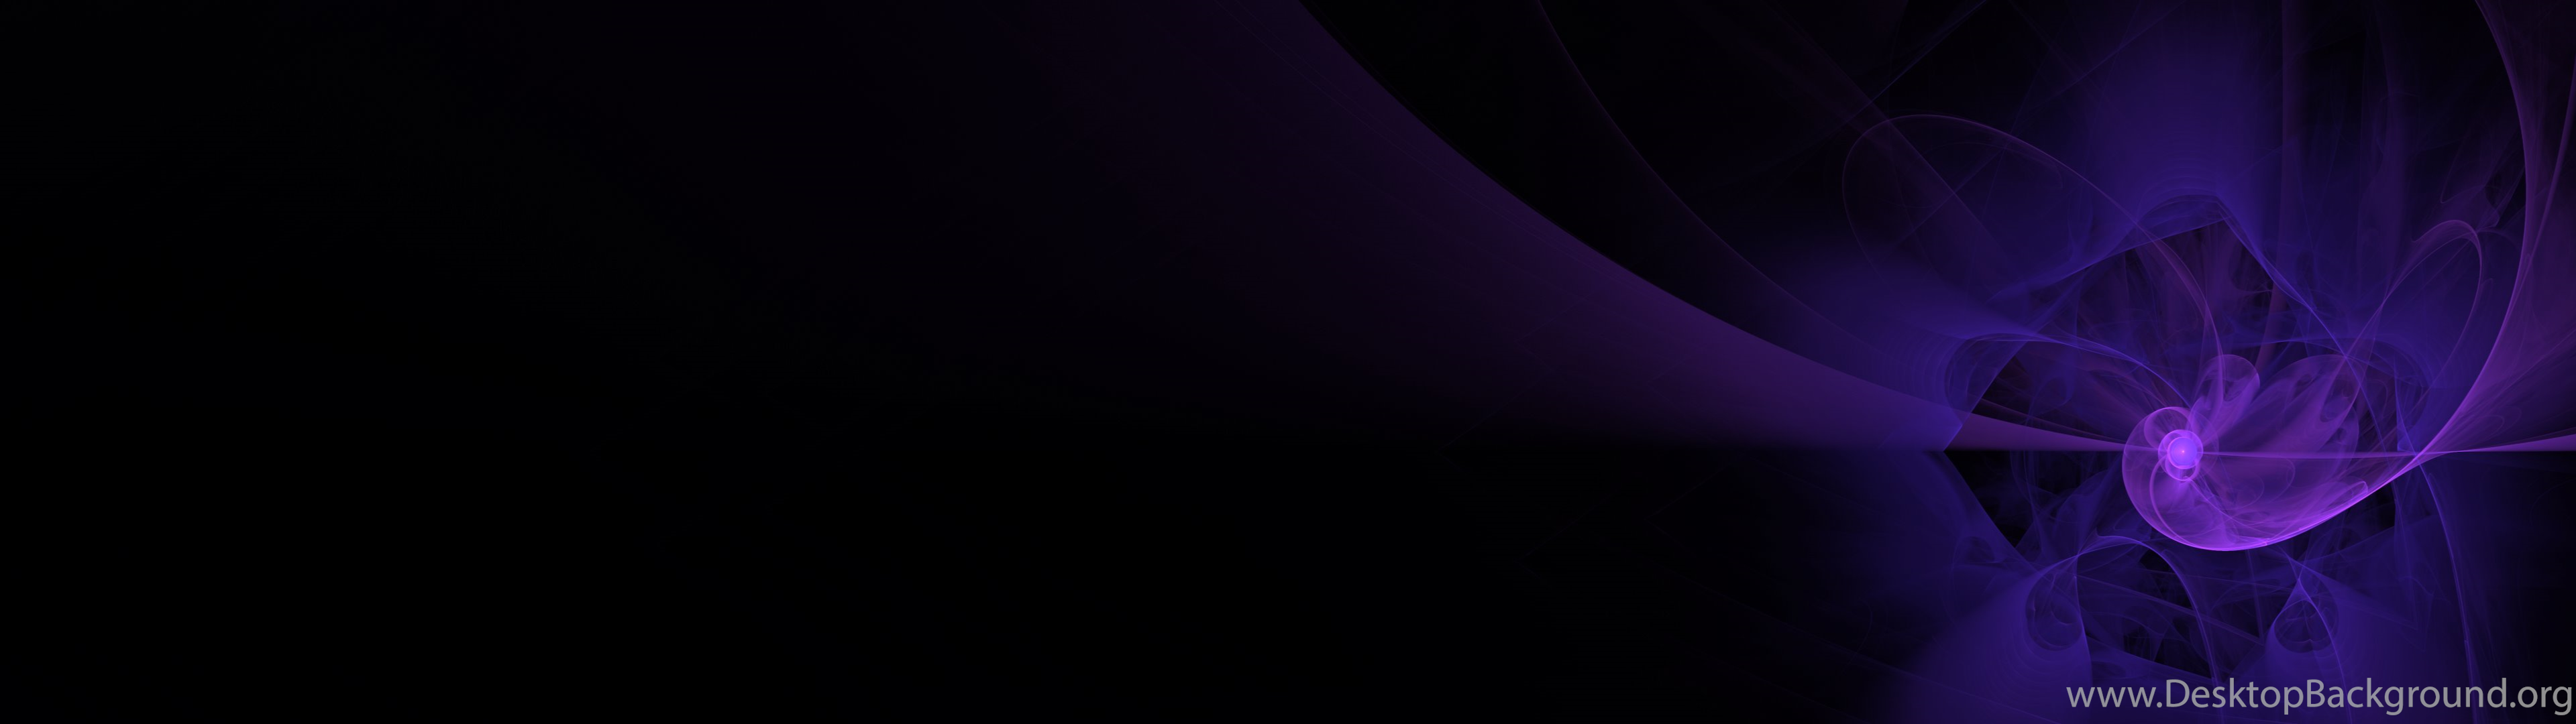 Black Dark Fractal Purple Waves Wallpaper Wallpaper And Image. Desktop Background